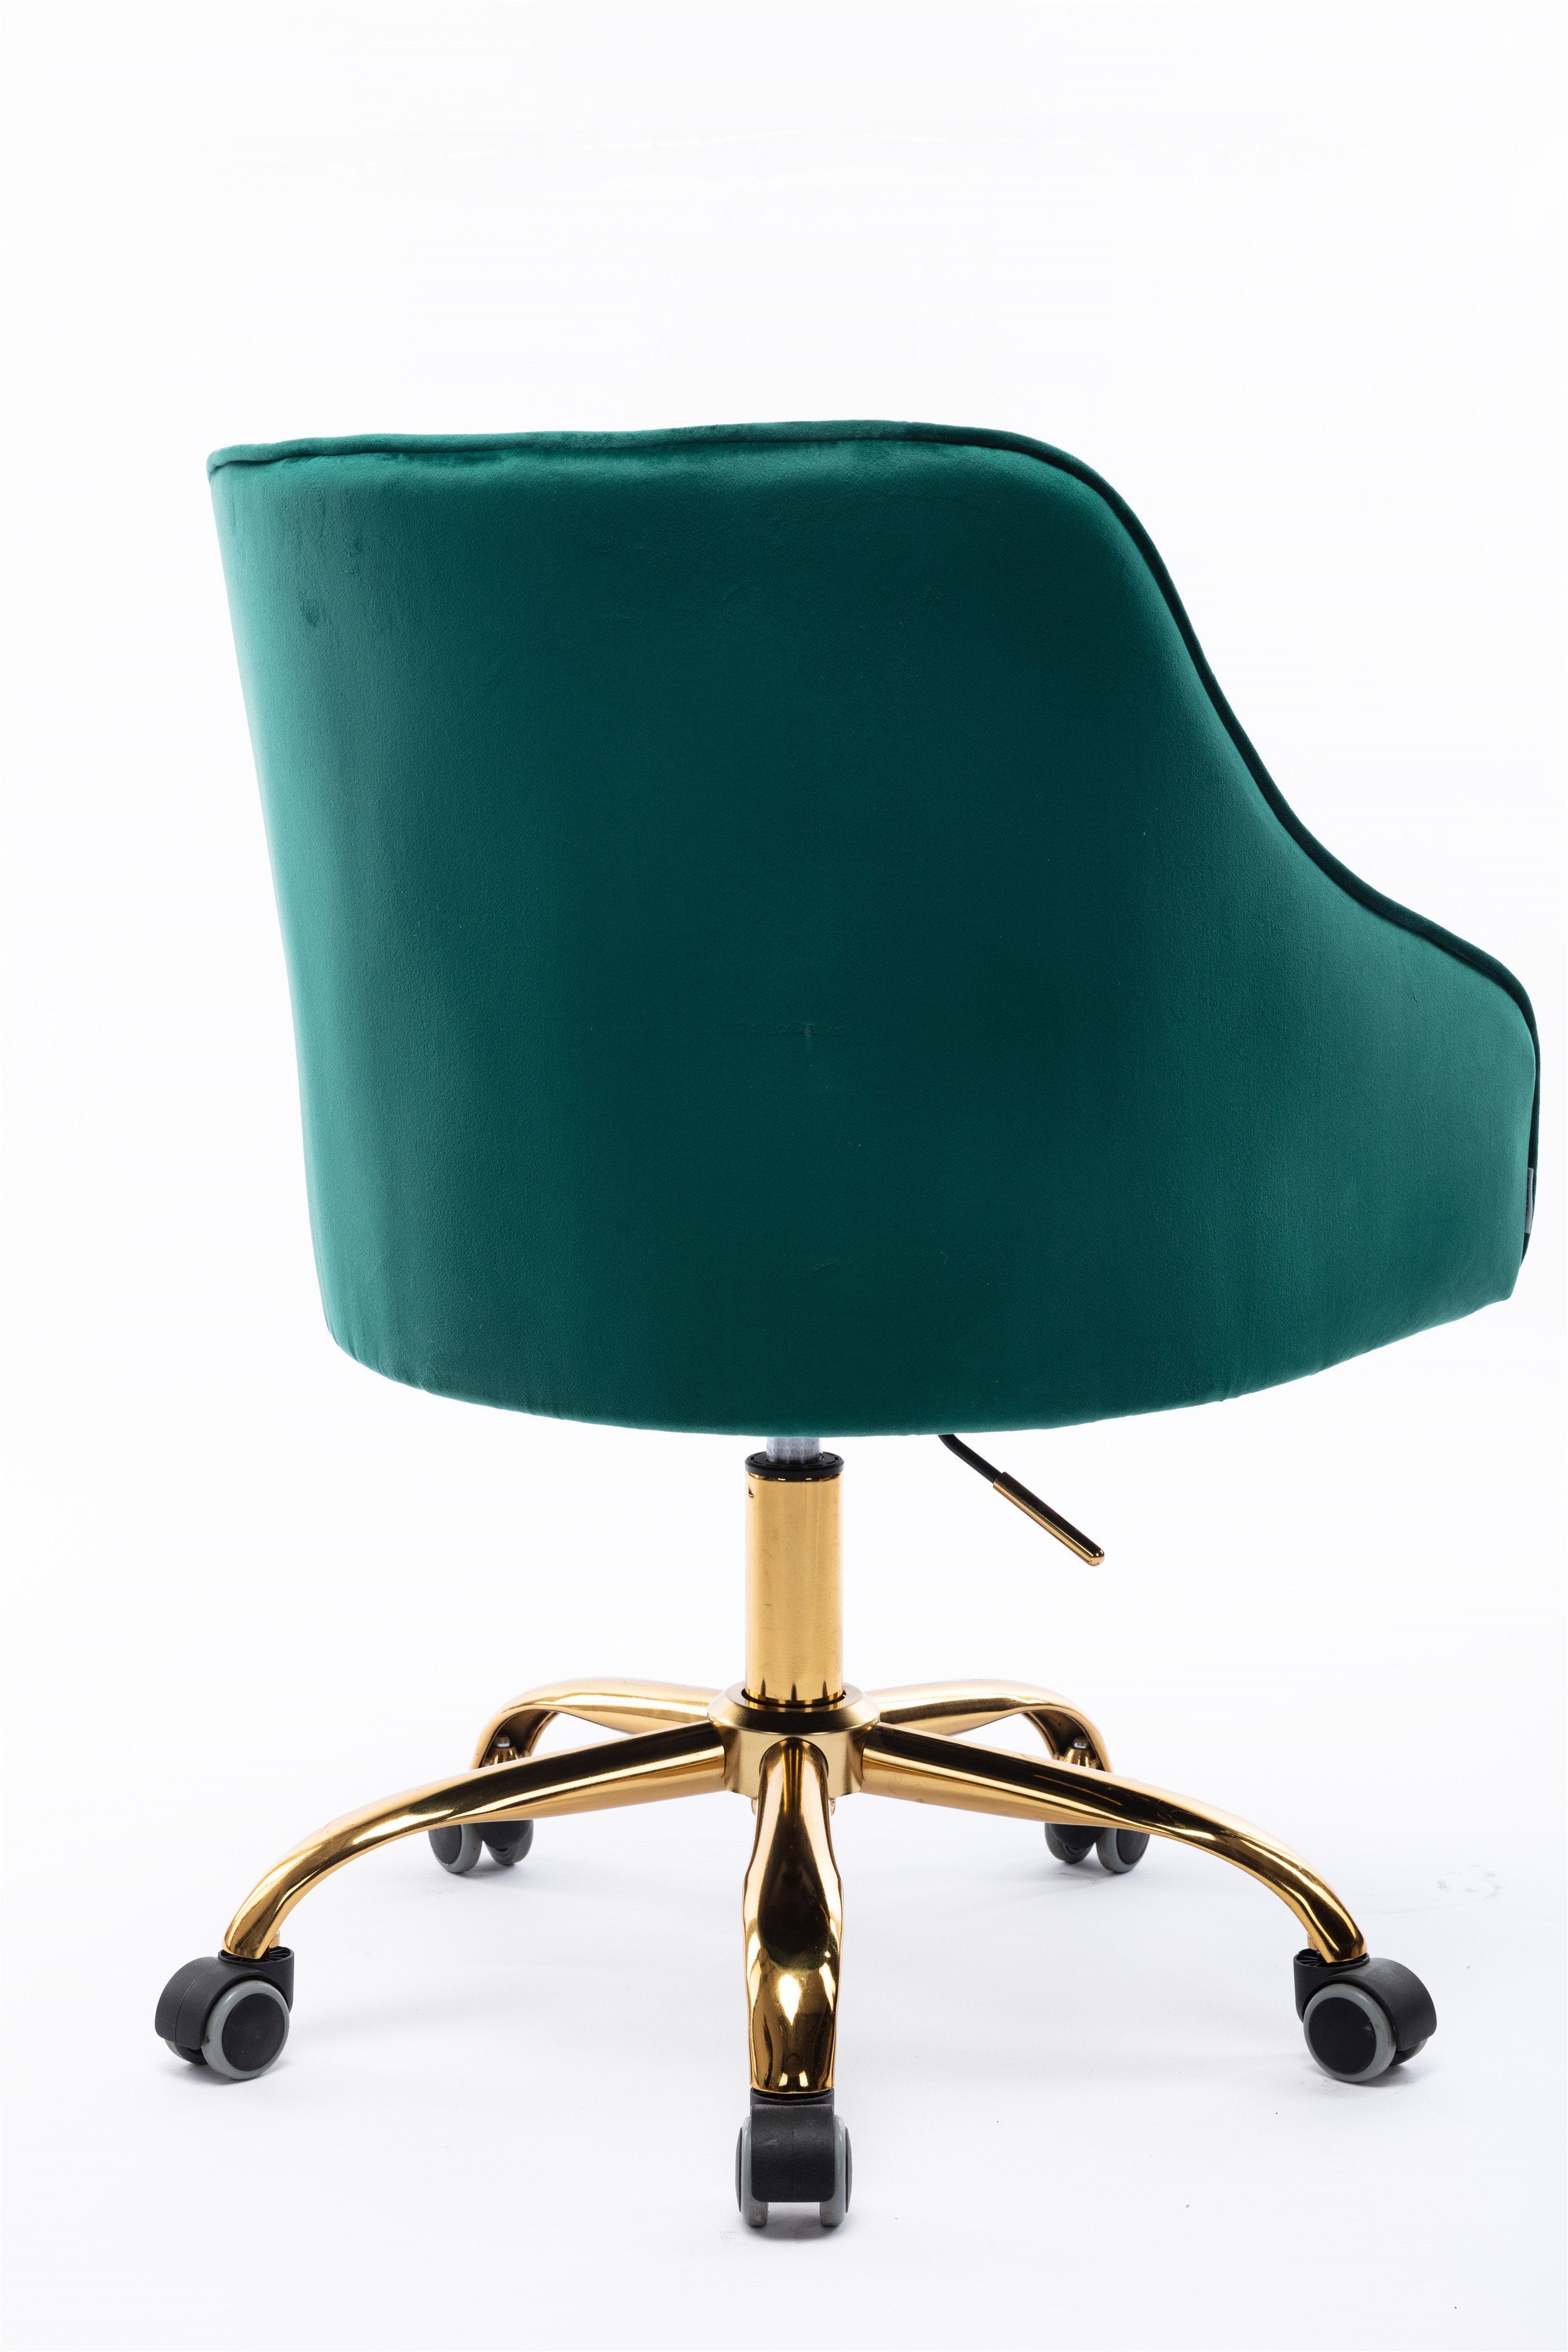 OKWISH Stuhl Samt Bürostuhl, Stoff-Schreibtischstuhl schicker (360° Stuhl, drehbar, Bürostuhl hübscher grün goldener höhenverstellbar), Schminkstuhl